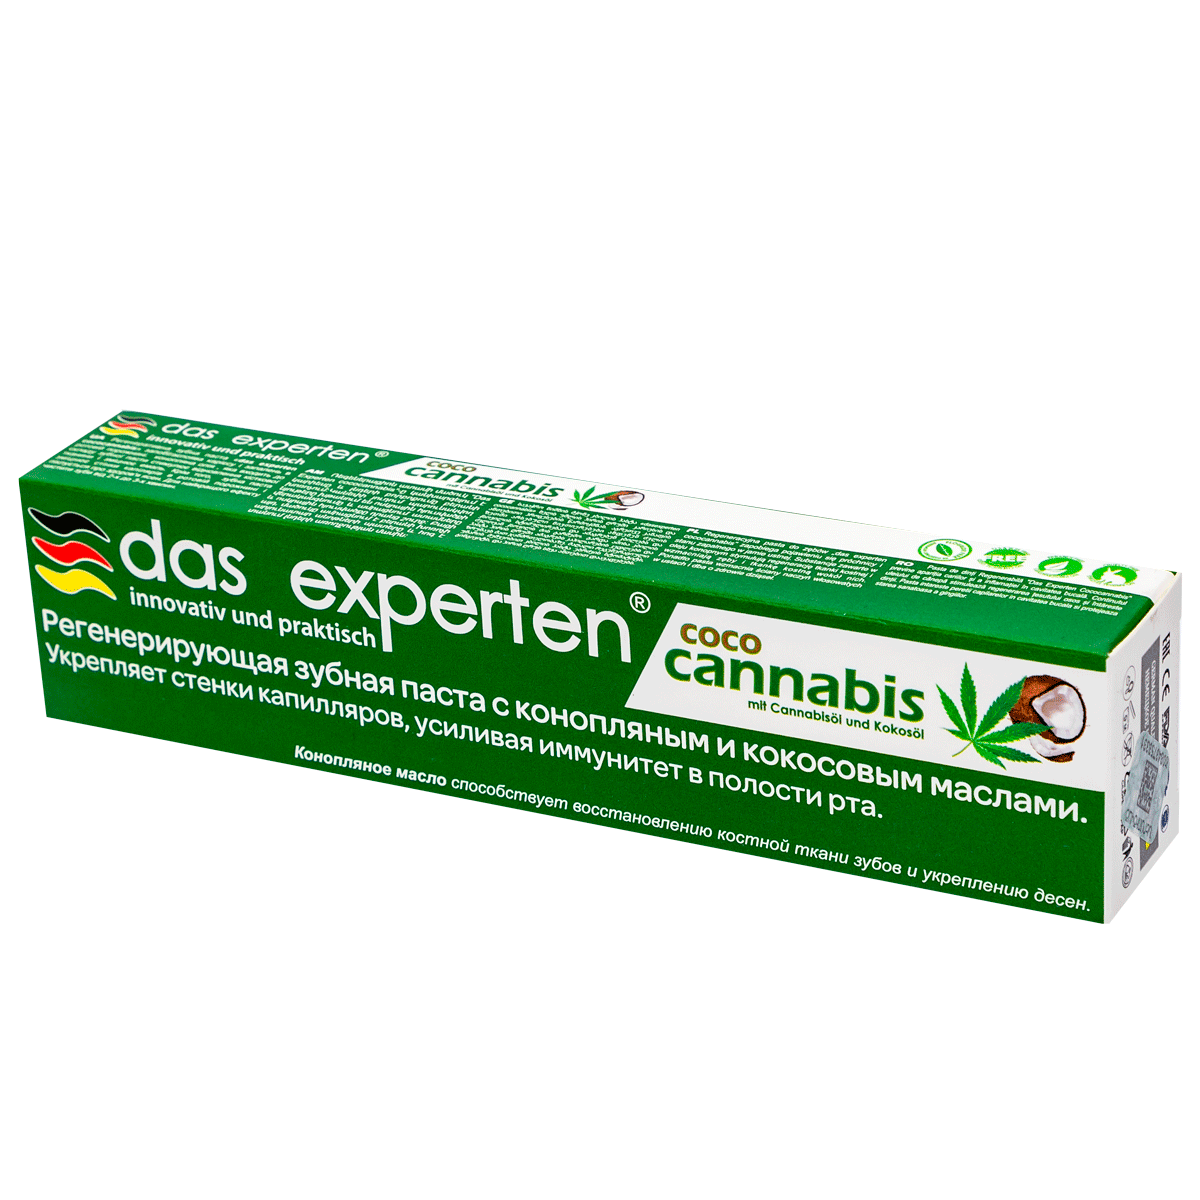 Toothpaste Das experten coco cannabis 